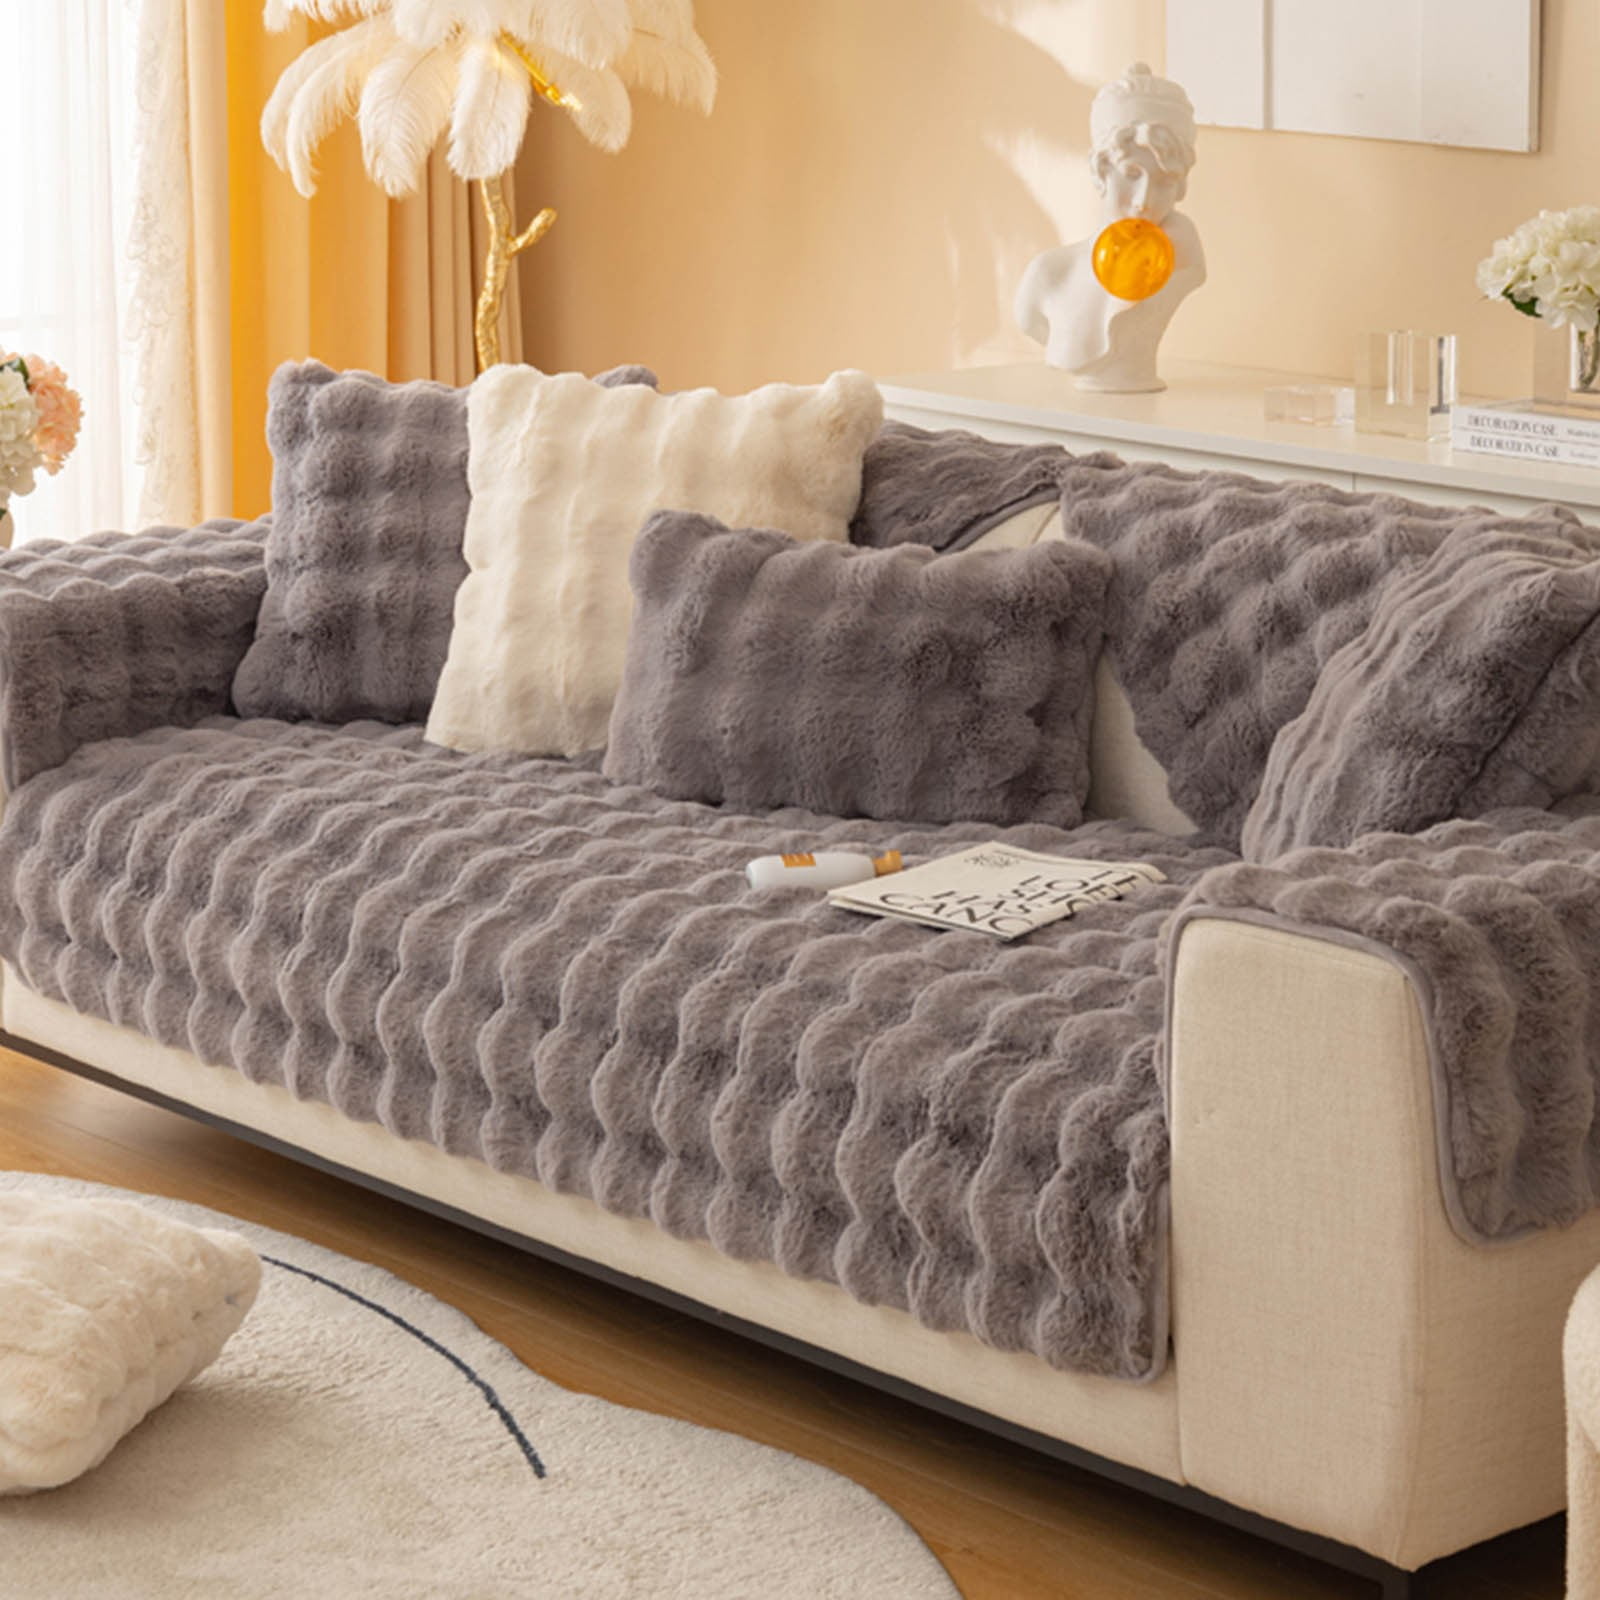 EJWQWQE Thick Rabbit Plush Sofa Cushion, New Non-Slip Sofa Cover Super Soft  Faux Throw Couch Cushion Covers Furniture Protector (Sofa Cushion 70x210